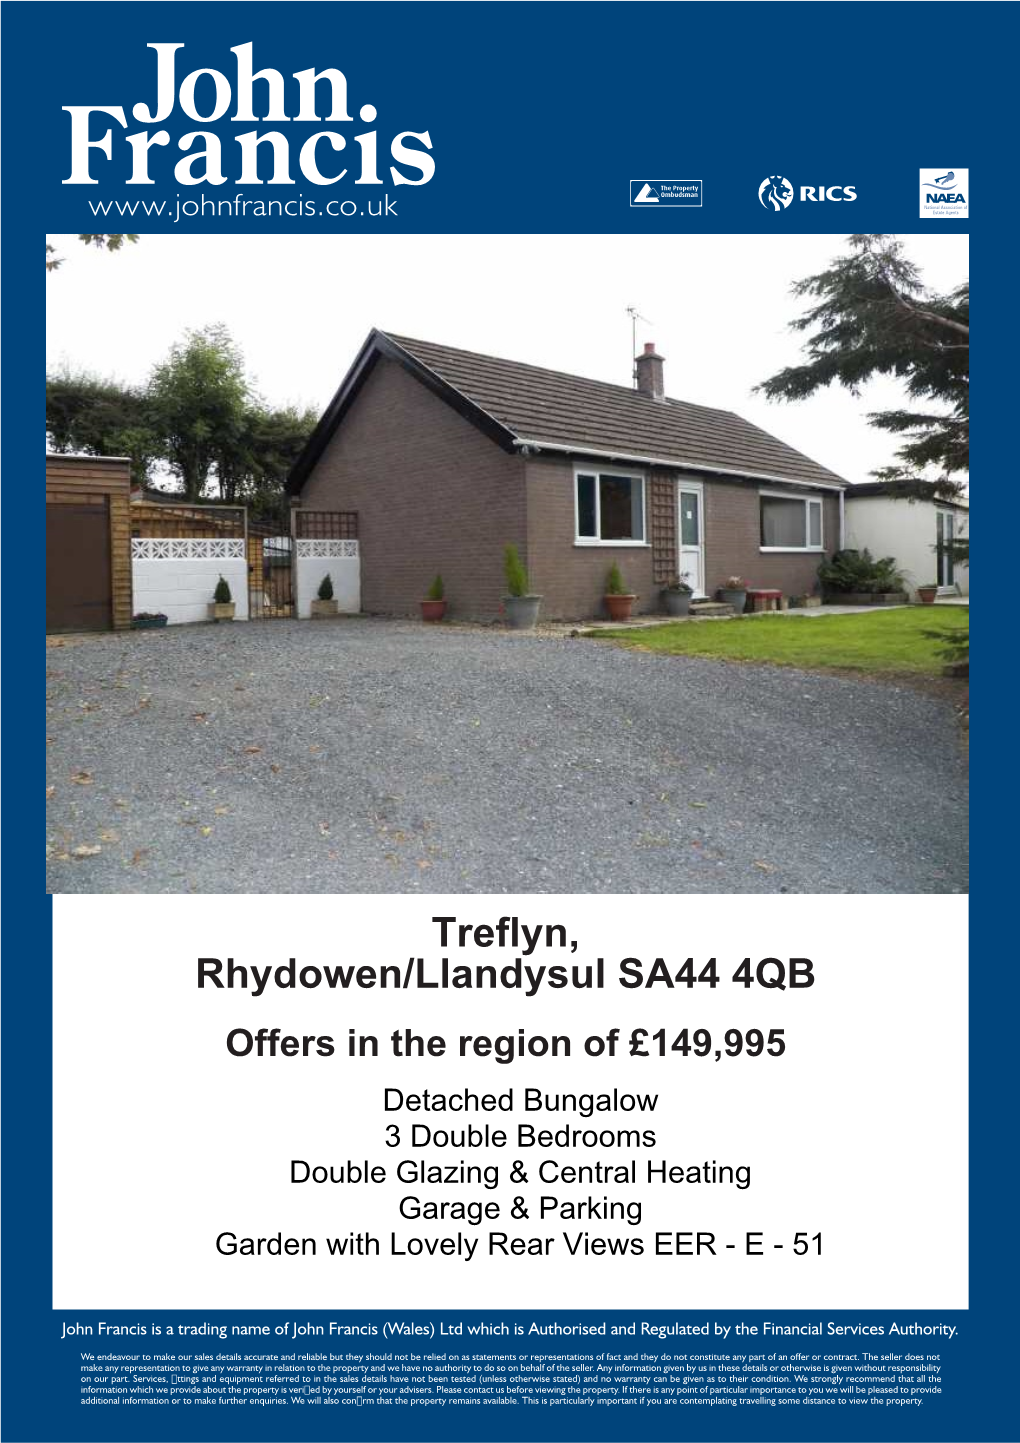 Treflyn, Rhydowen/Llandysul SA44